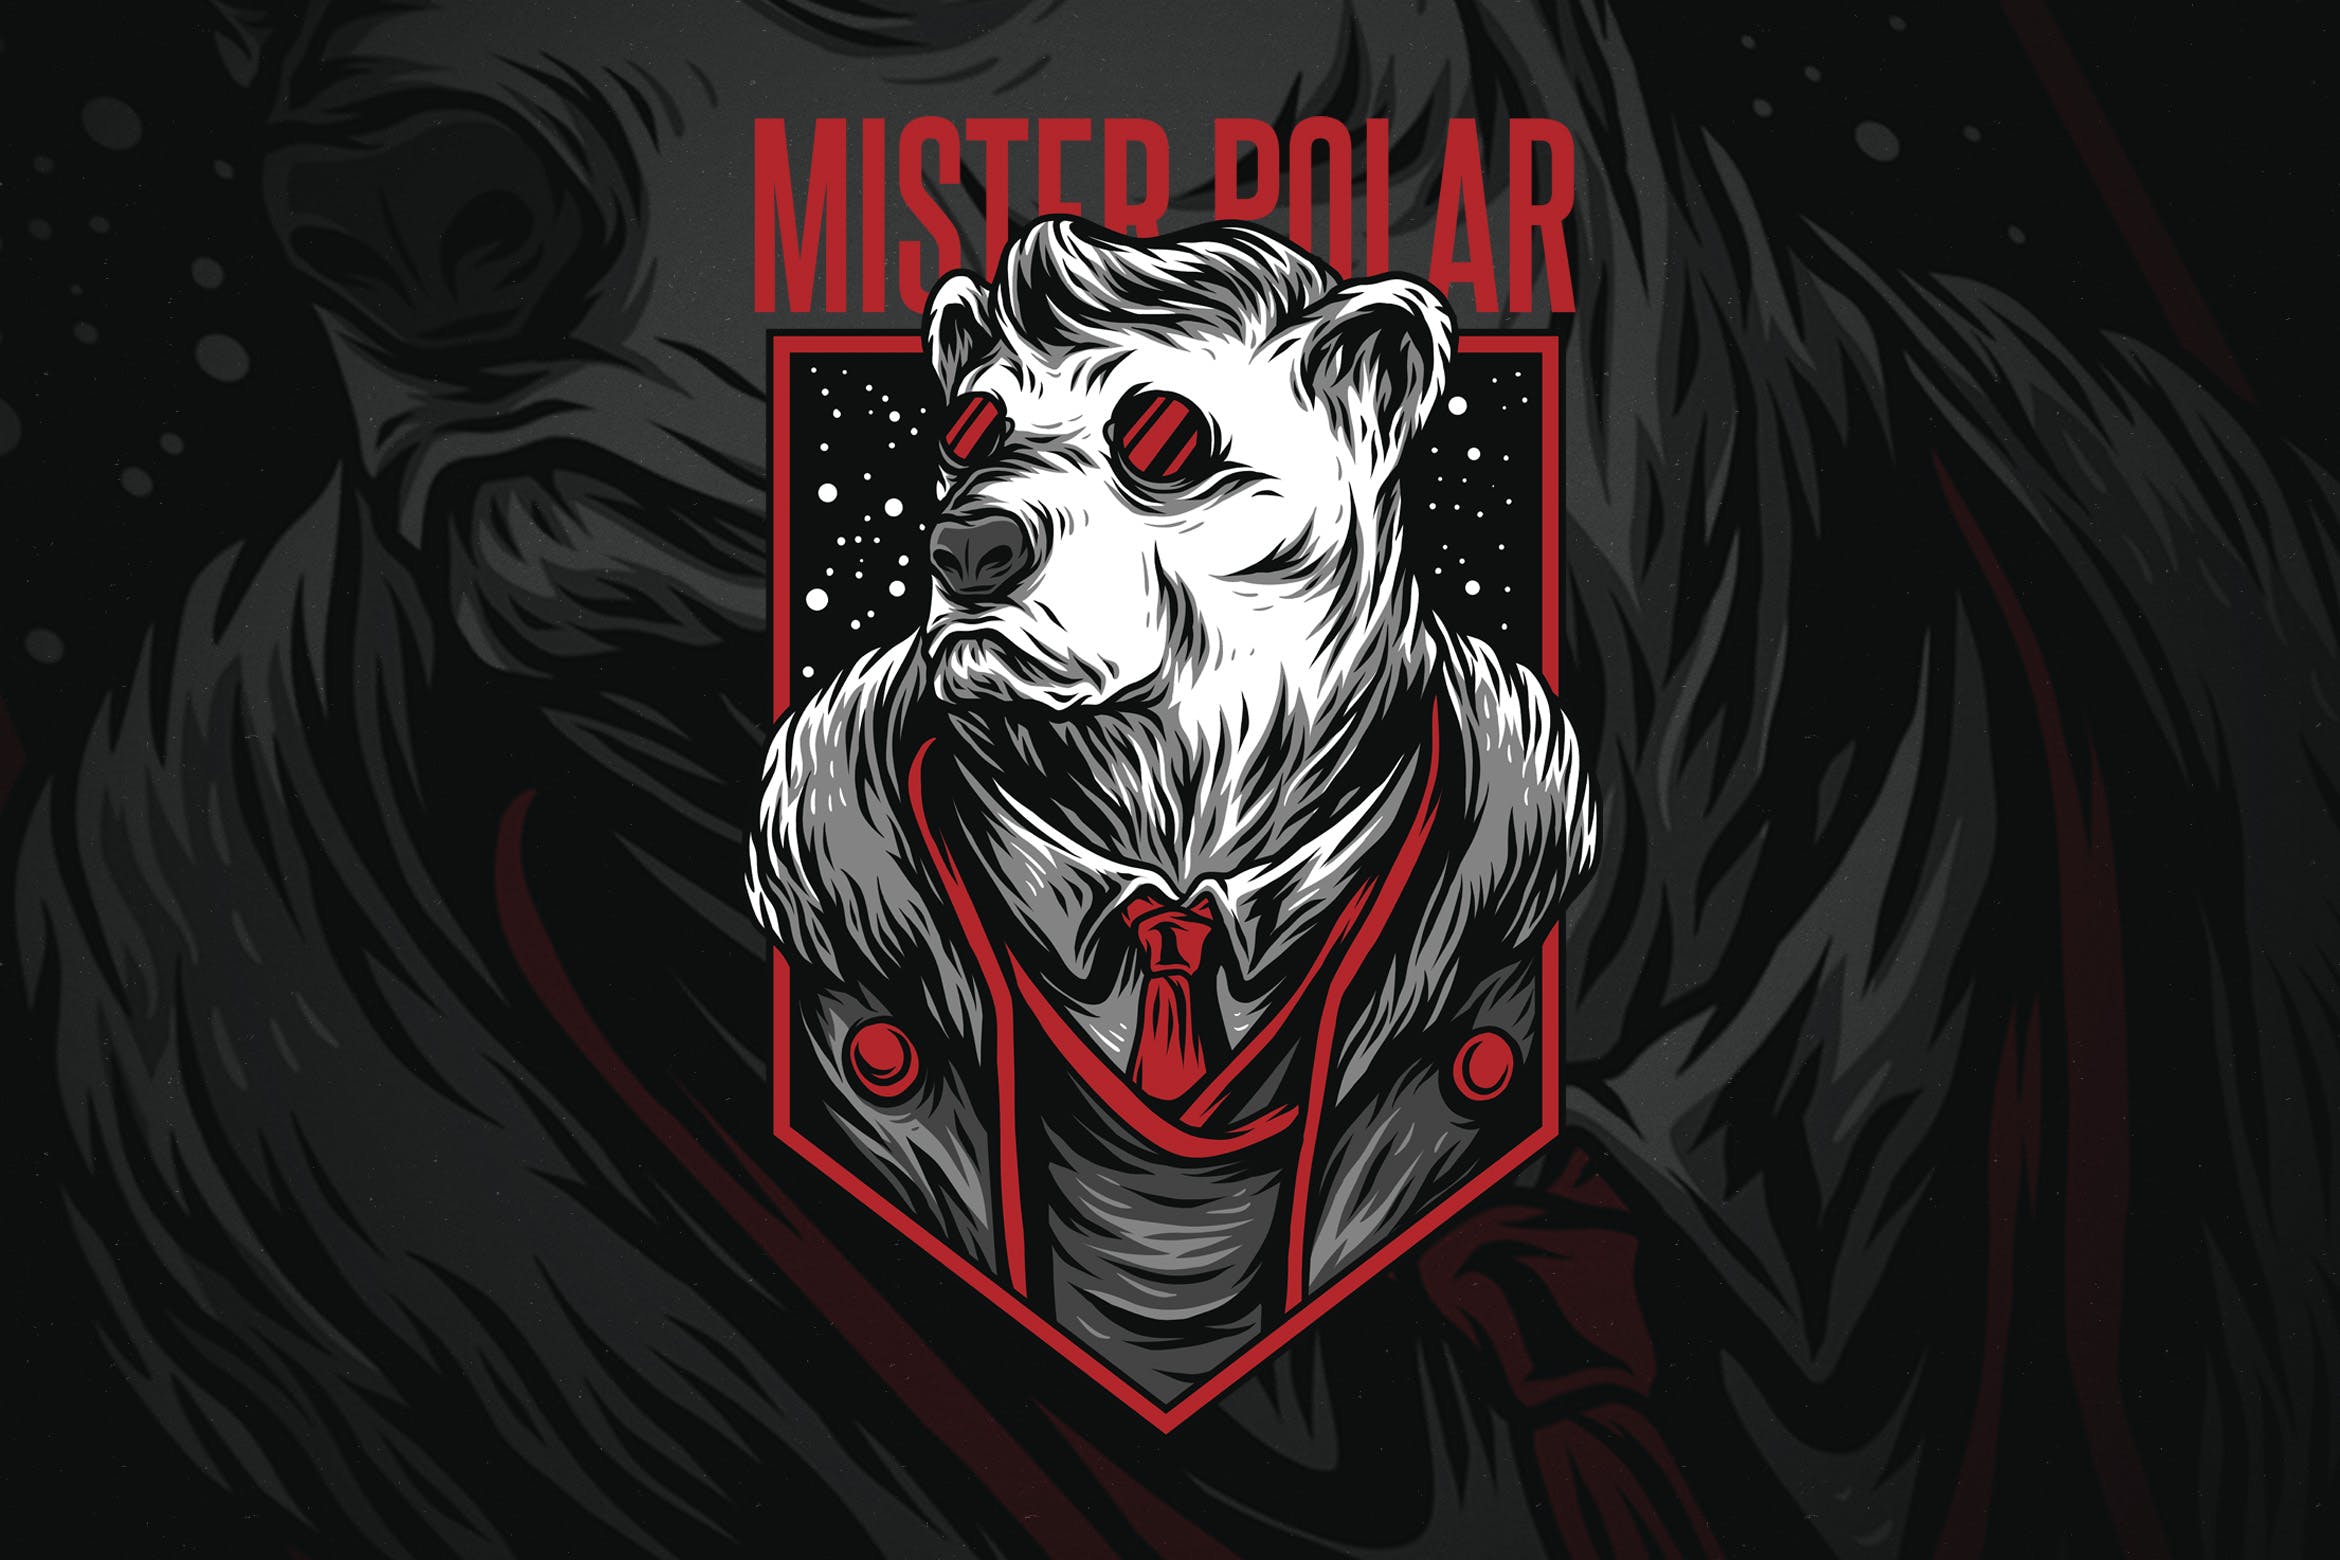 极地先生潮牌T恤印花图案蚂蚁素材精选设计素材 Mister Polar插图